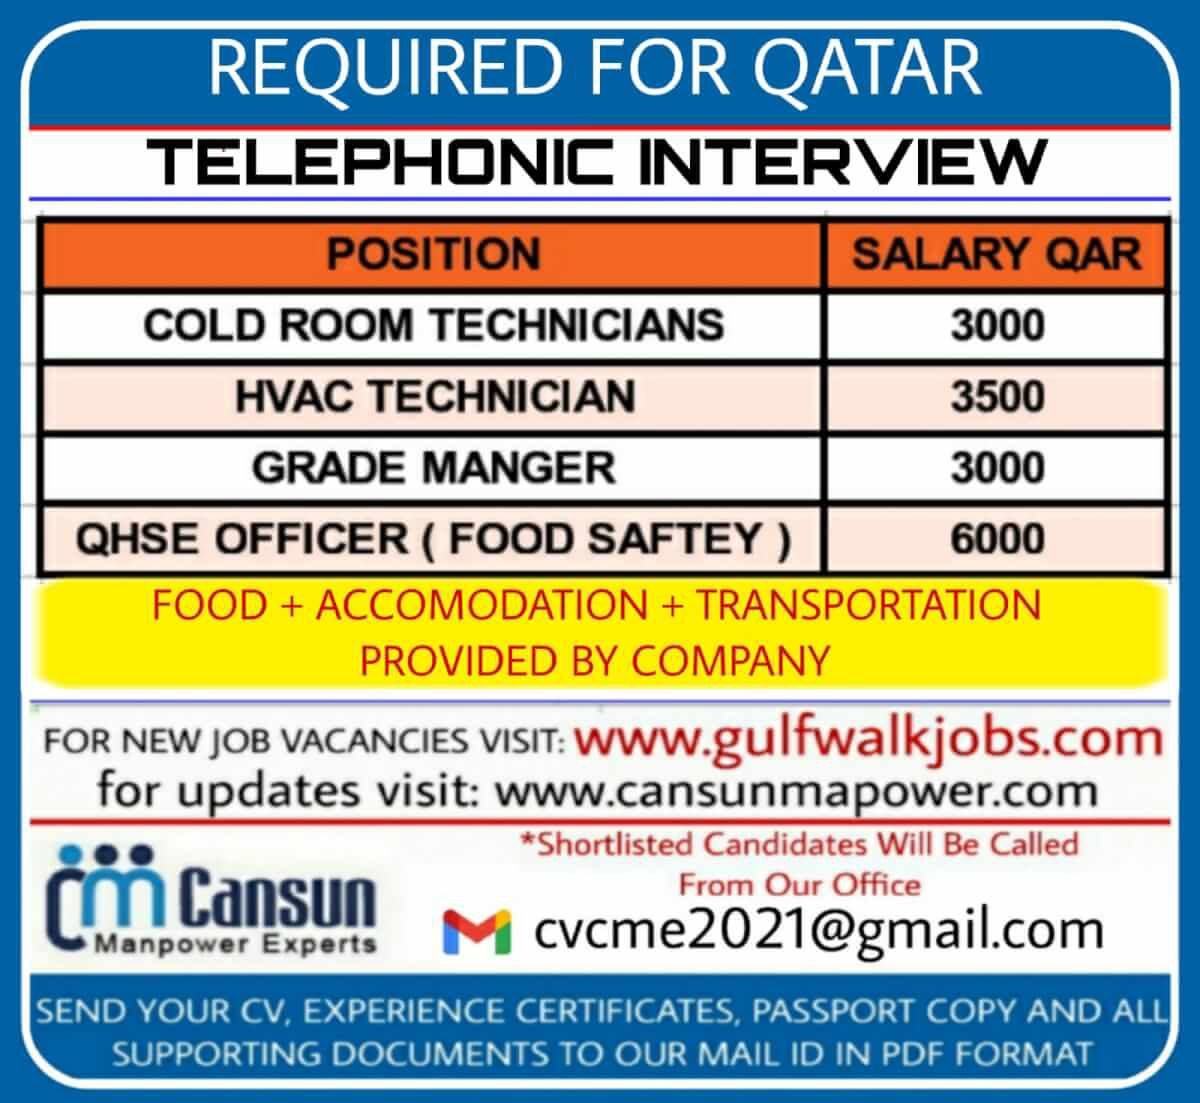 Gulfwalkin Urgently hiring for a leading company - Qatar